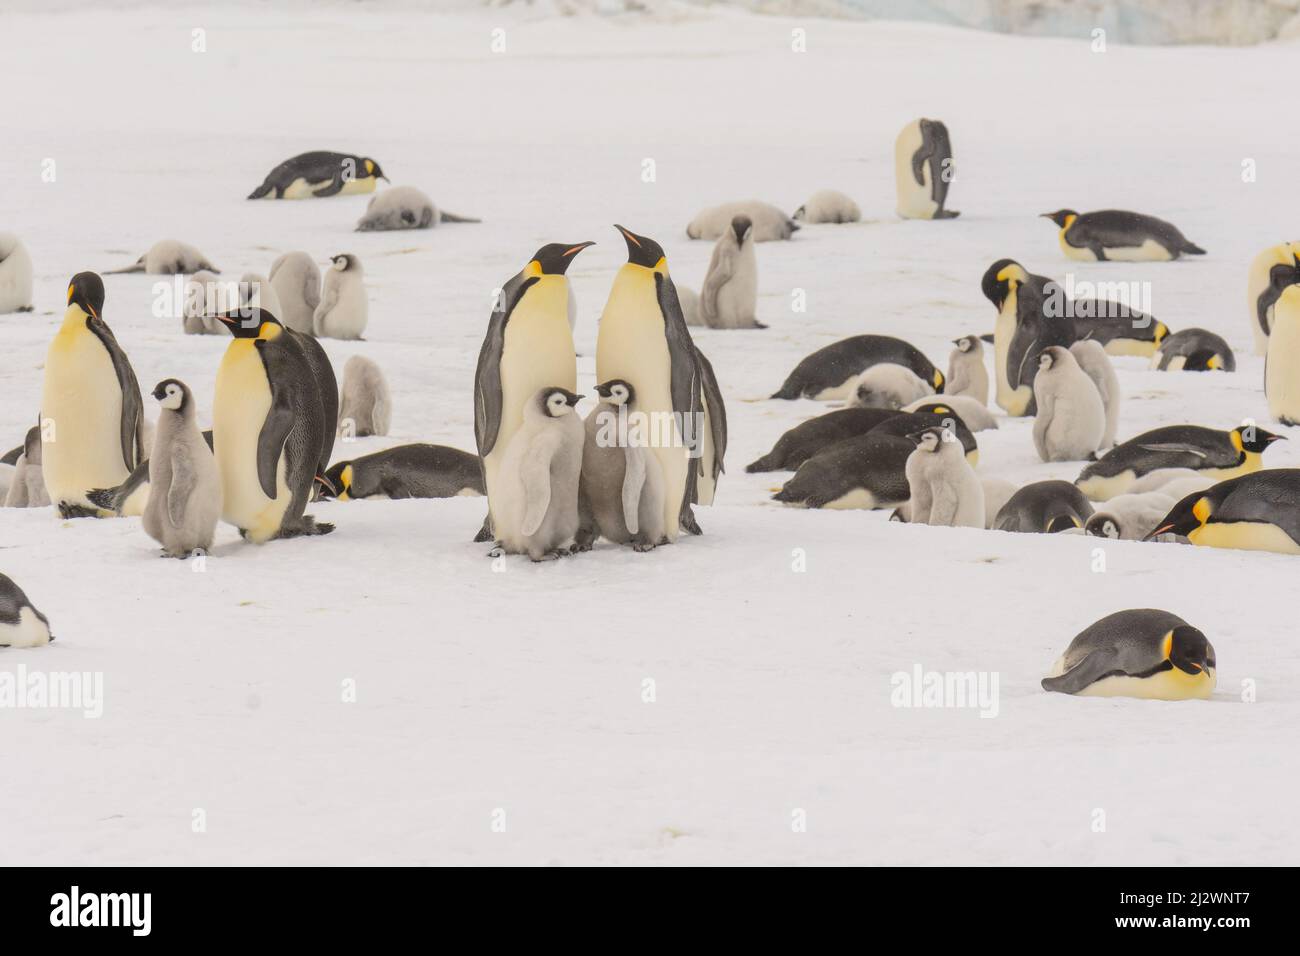 Pingouins d'empereur (Aptenodytes forsteri) à la colonie de Snow Hill dans la mer de Weddell, Antarctique Banque D'Images